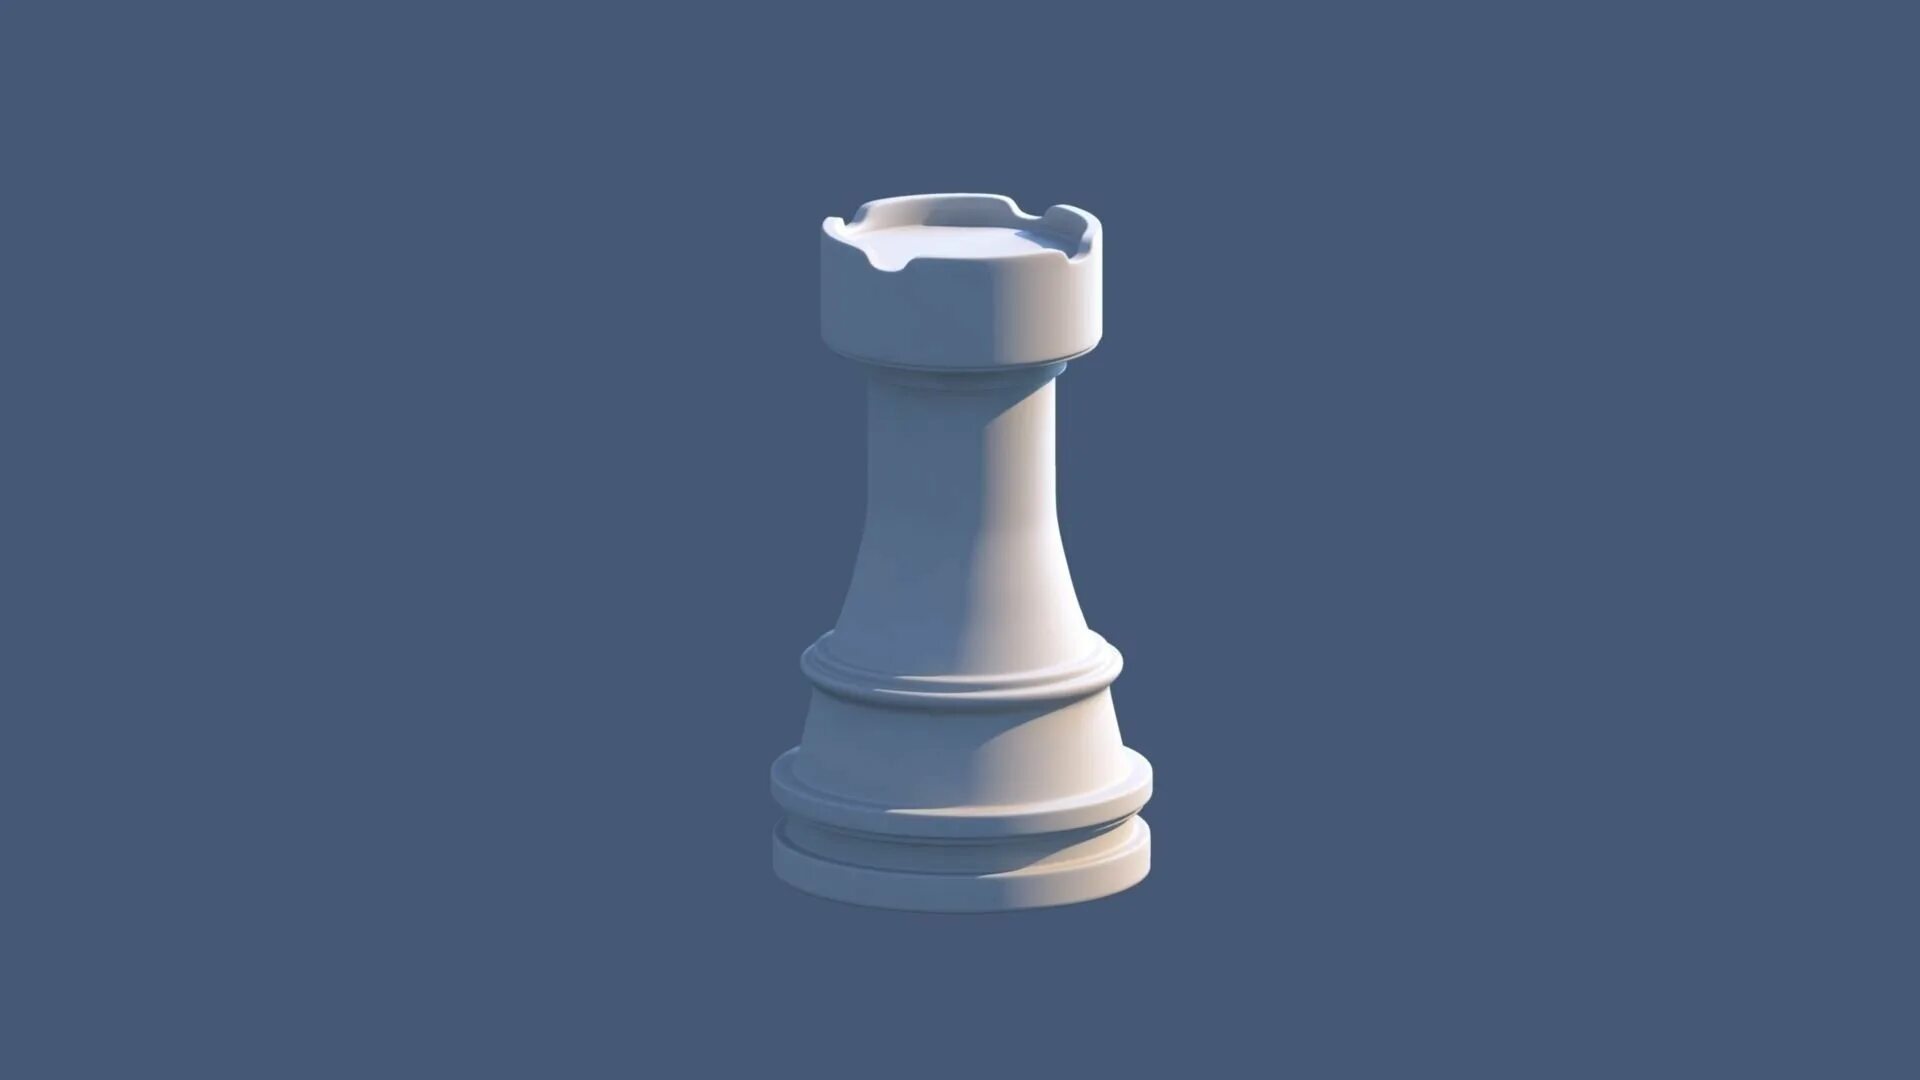 Ладья д. Шахматная фигура Ладья 3д. Белая Ладья шахматы фигура. Ладья 3д модель. Chess 3d Ладья.